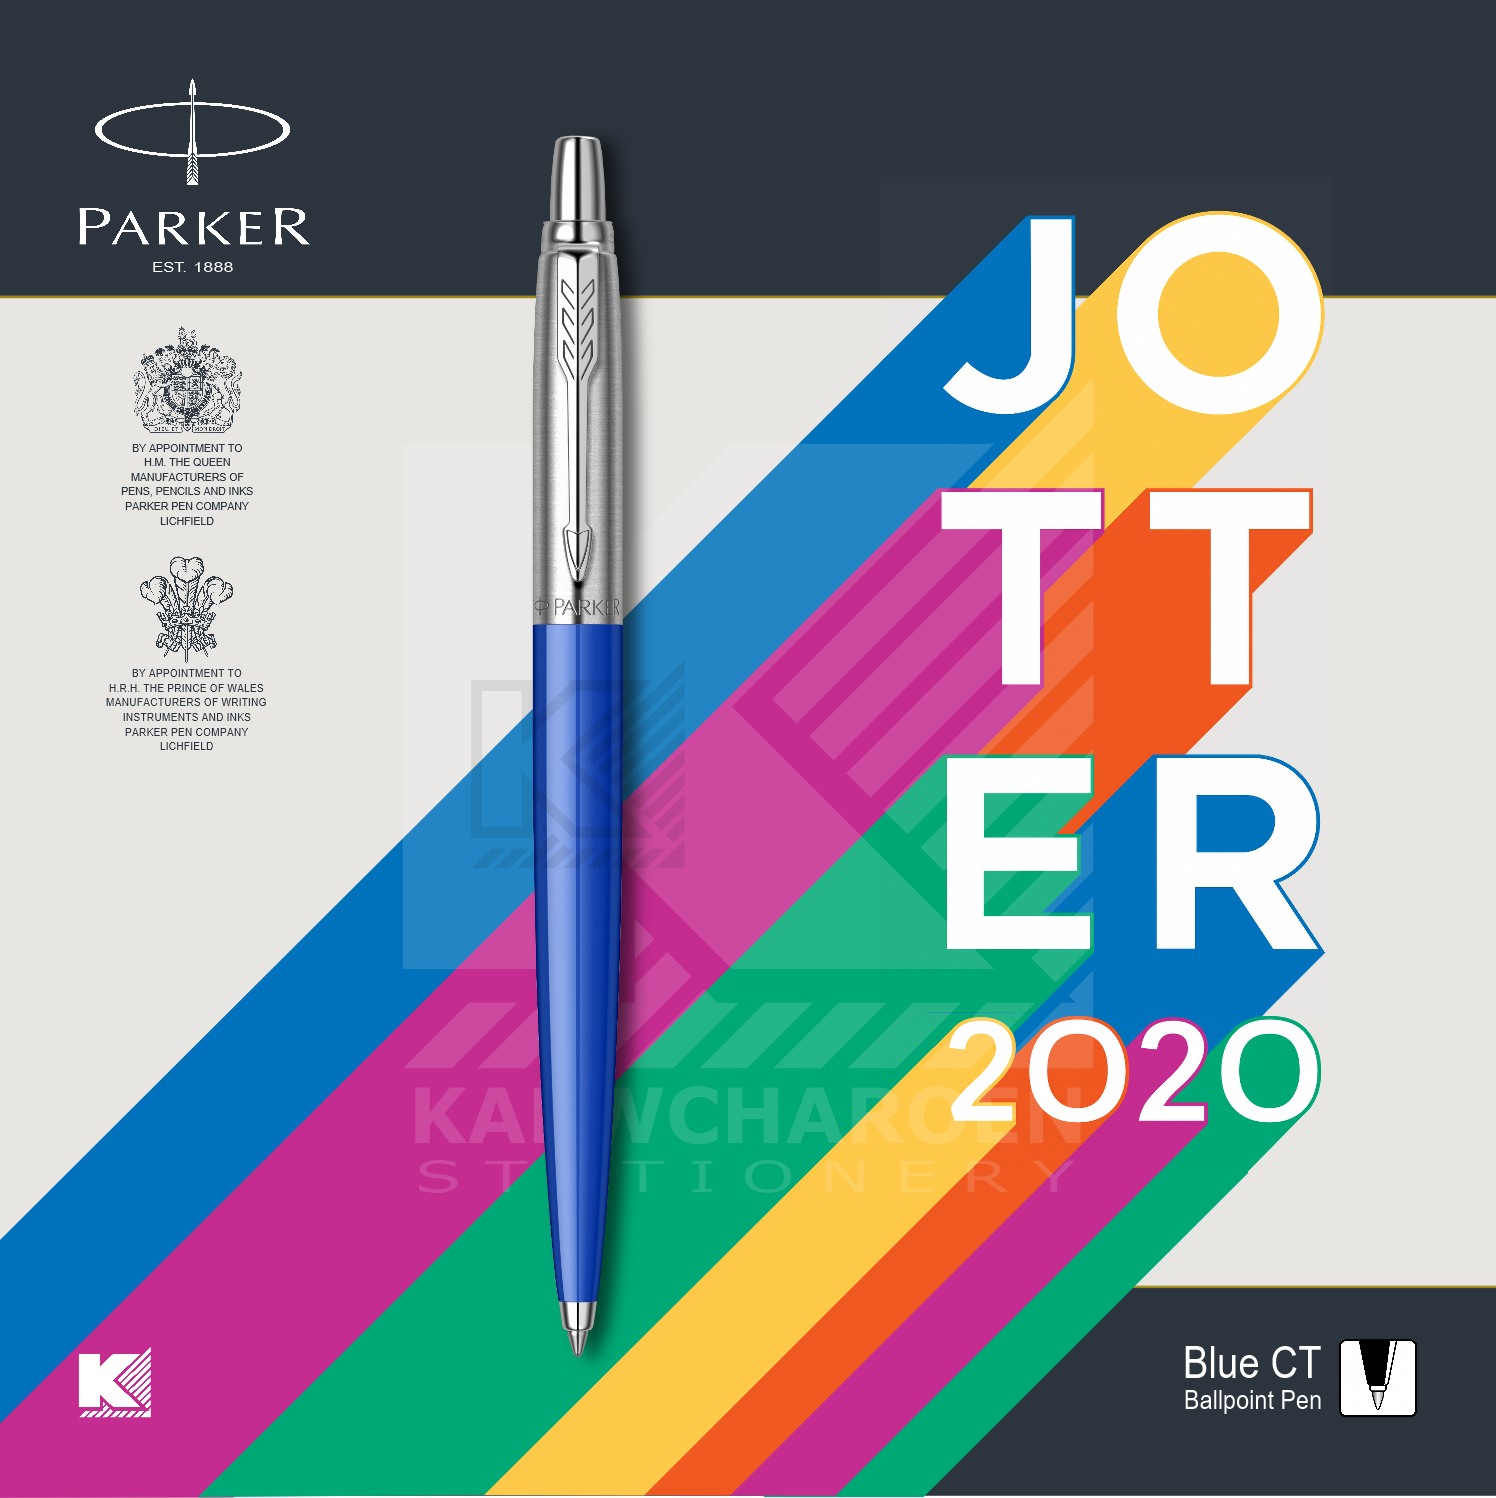 ปากกาลูกลื่น Parker Jotter Originals Series 2020 สี น้ำเงิน สี น้ำเงิน